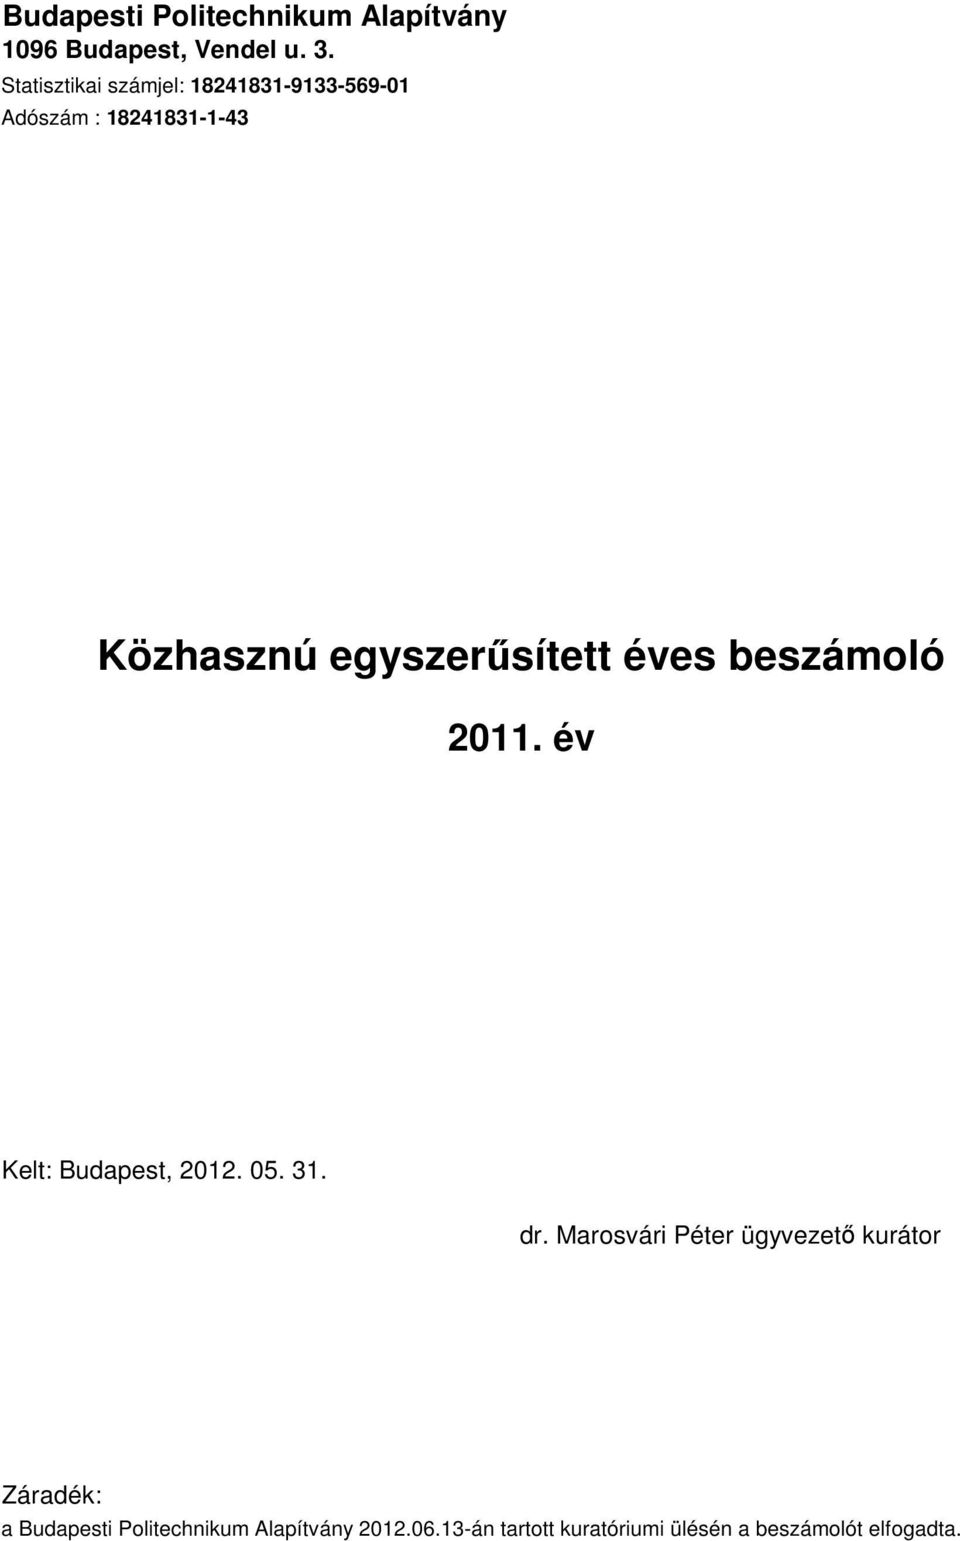 Politechnikum Alapítvány 2012.06.